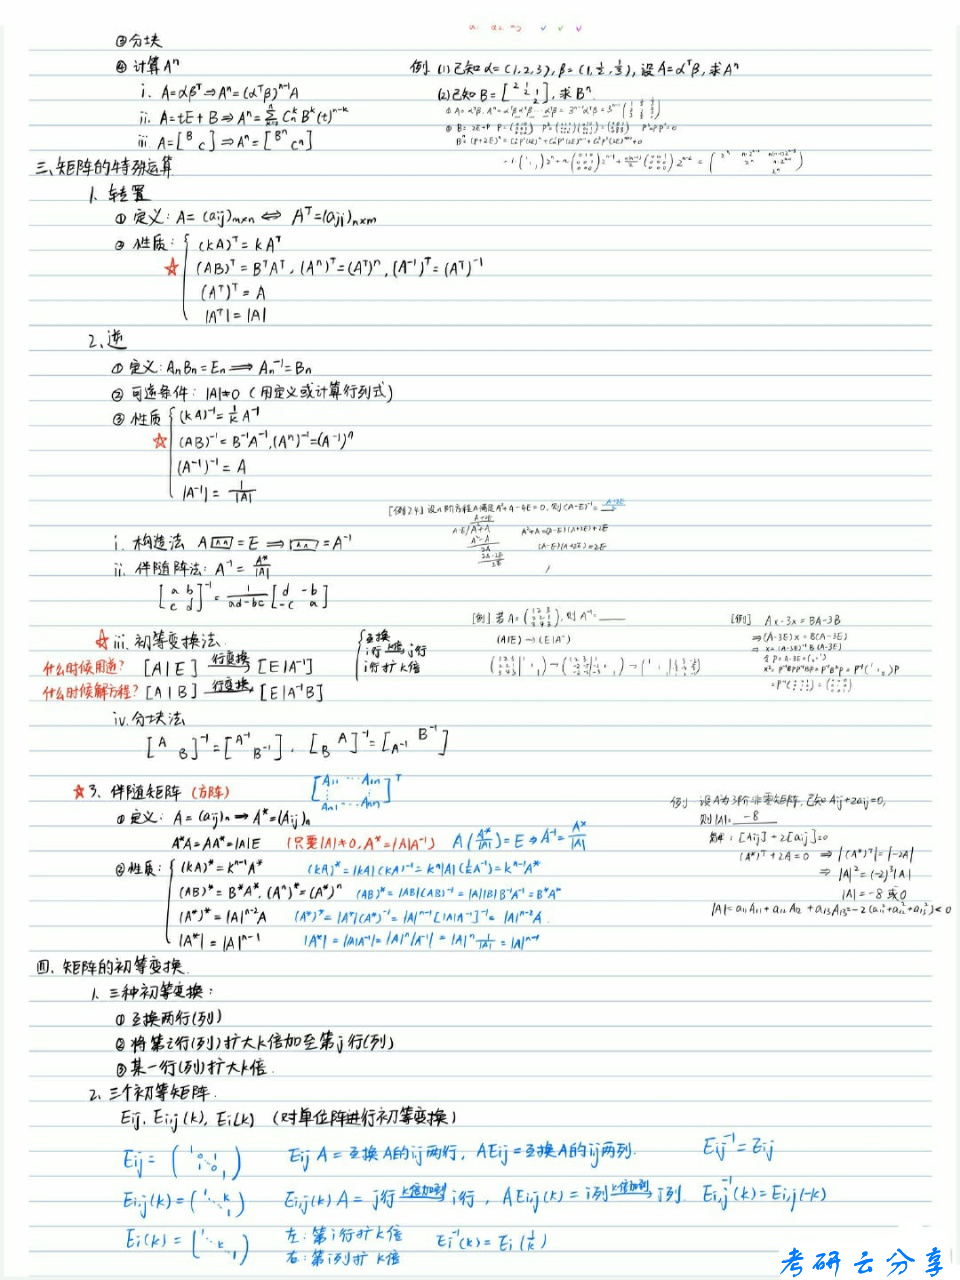 数学线性代数基础知识手写笔记,image.png,数学干货,参考笔记,第3张